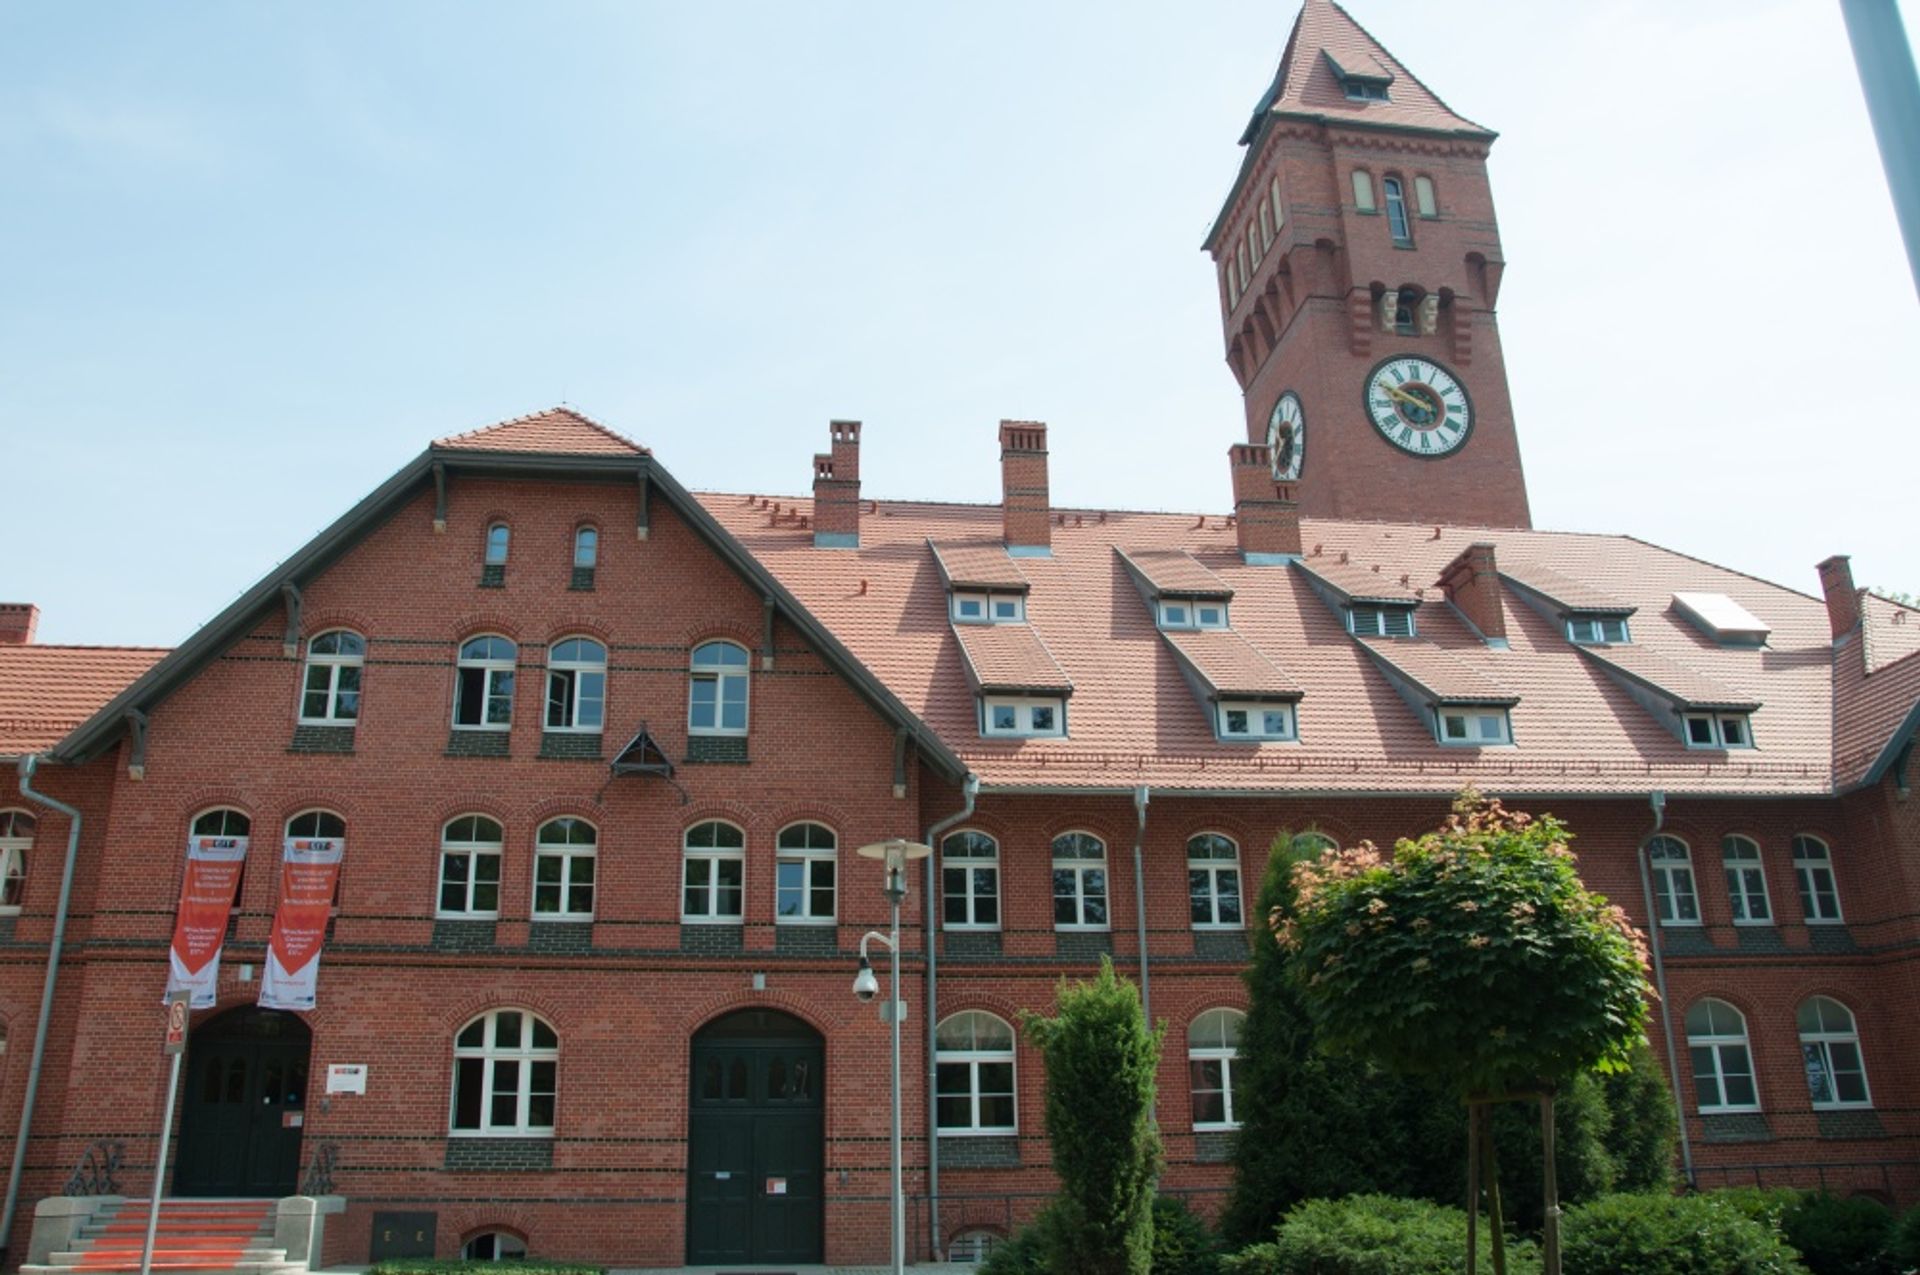  Nowoczesne centrum naukowo-badawcze we Wrocławiu coraz bliżej